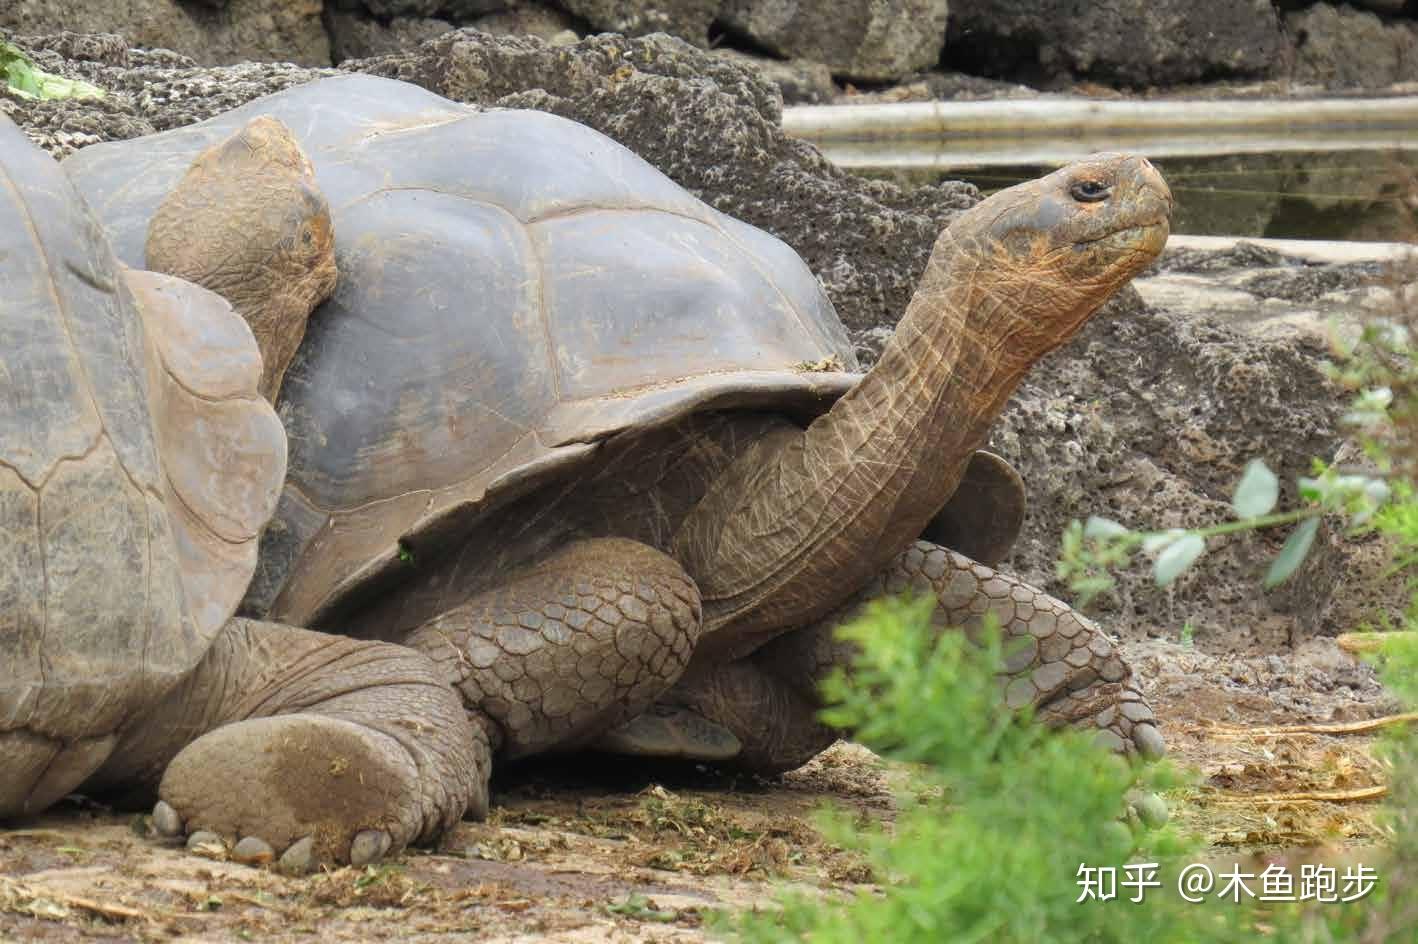 【字幕搬运】油管土豪up巨大庭院饲养世界最大乌龟——加拉帕戈斯象龟